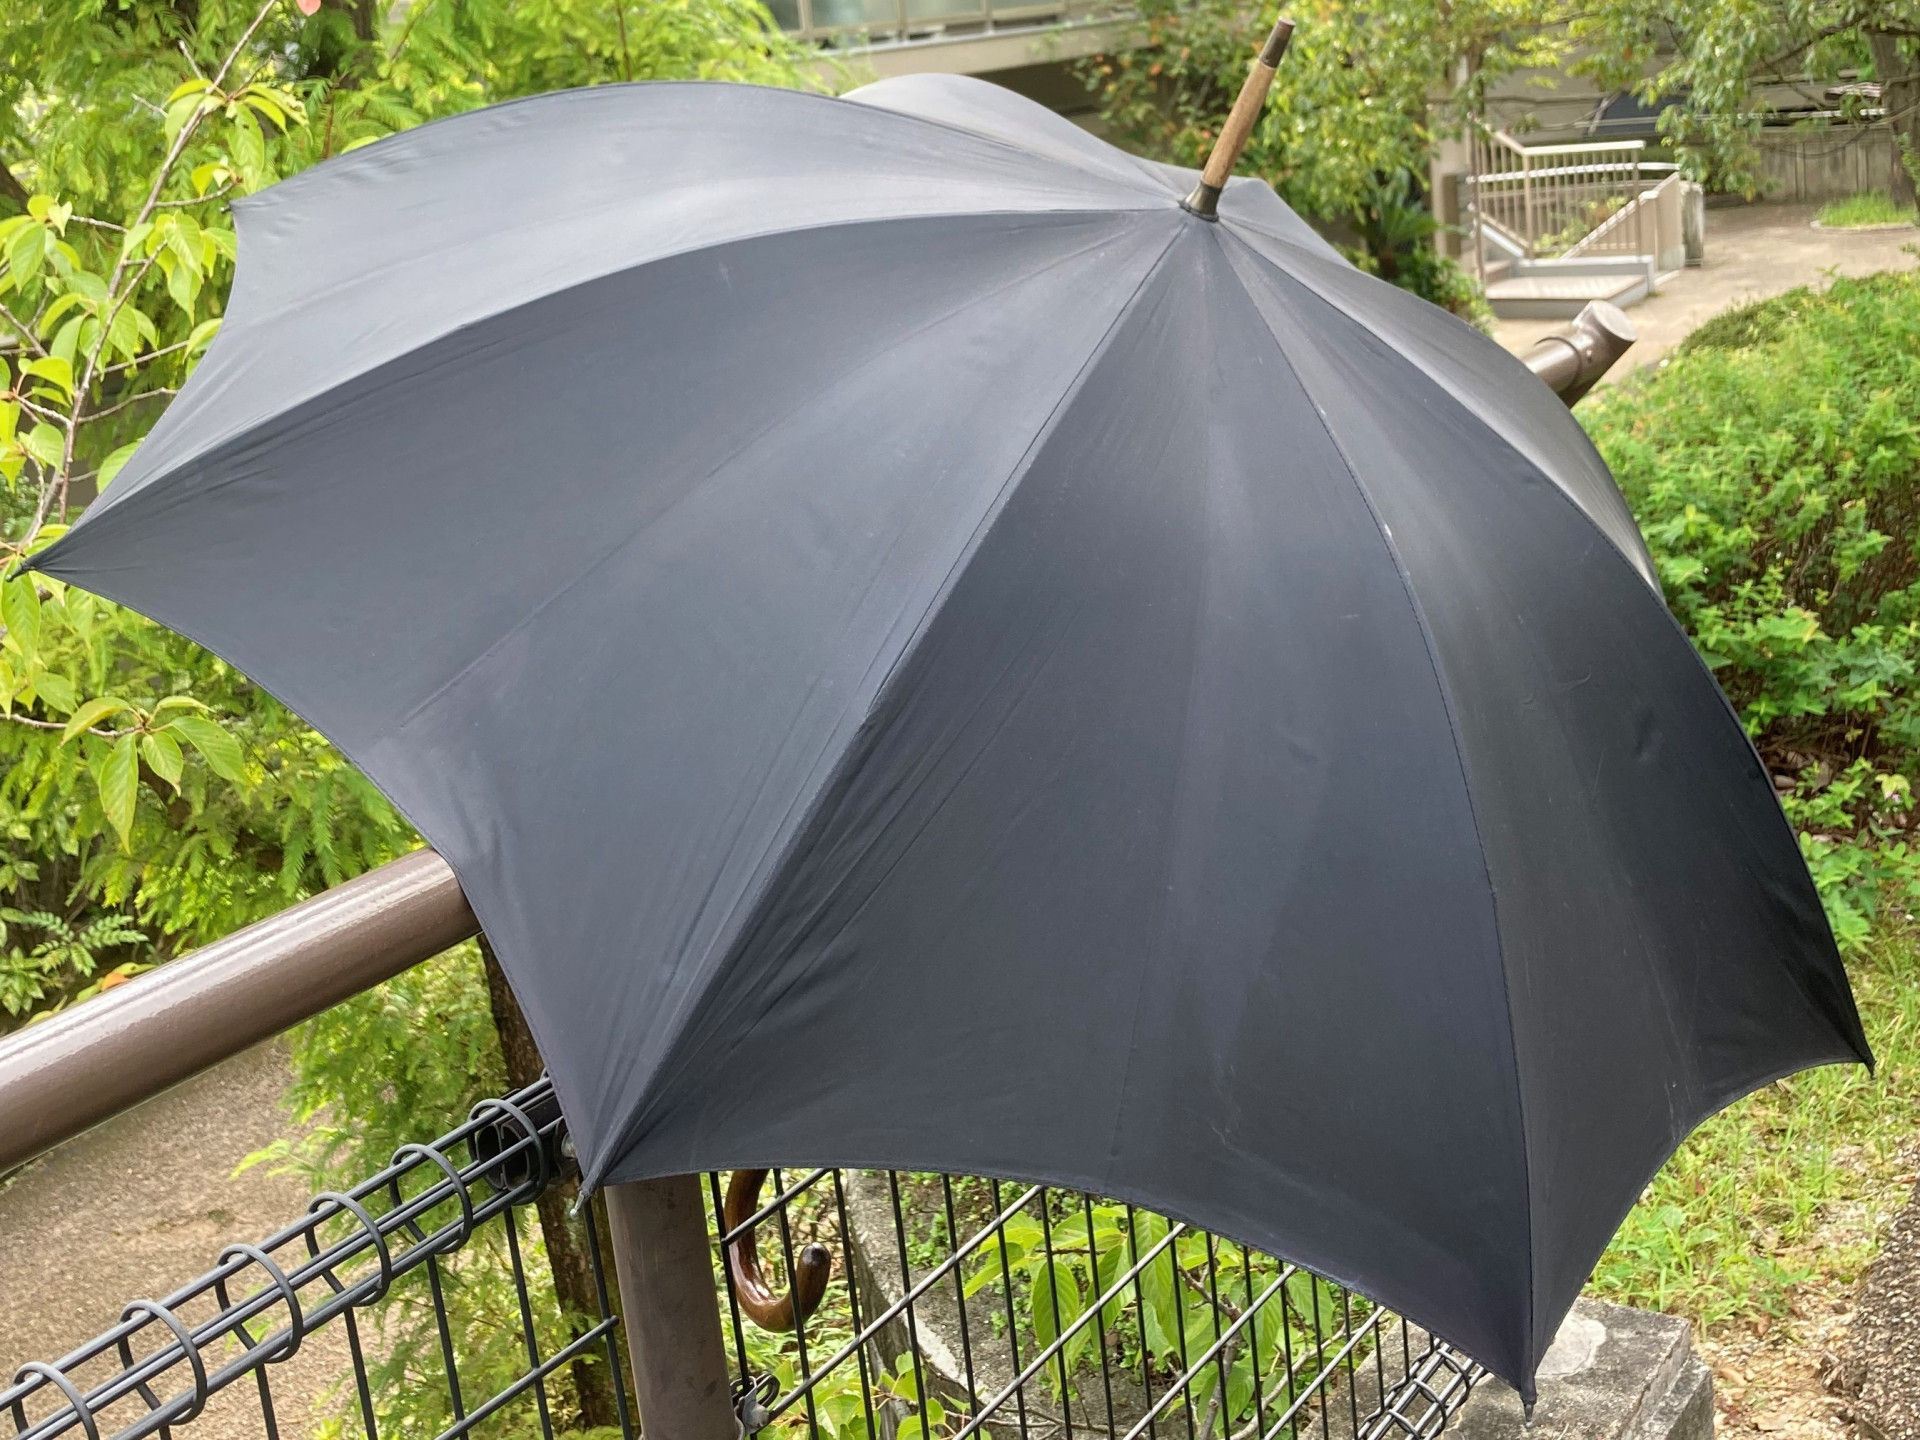 イギリスでの思い出の傘...メールにて感謝のお言葉と経過【傘修理】